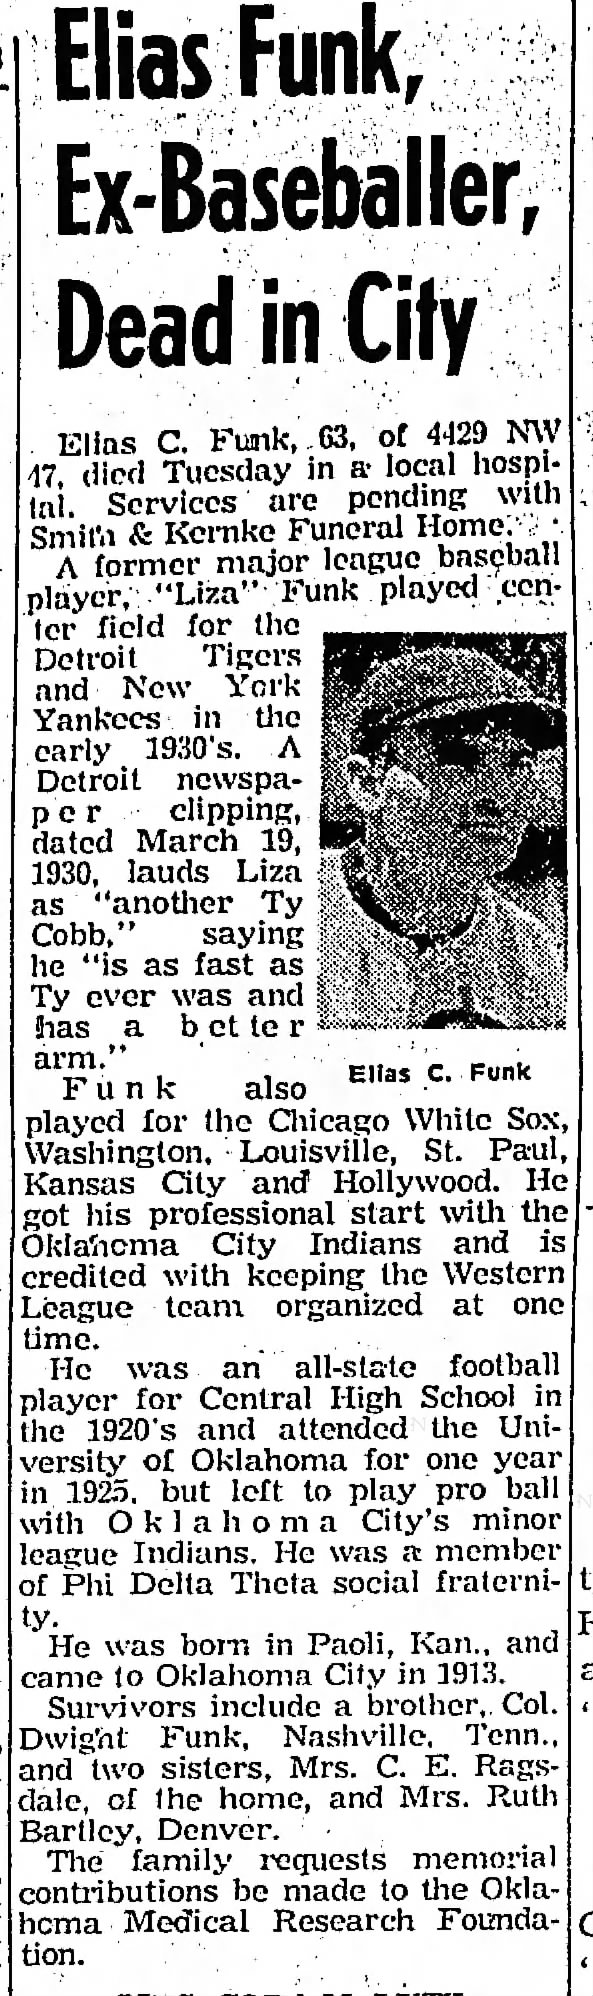 Elias Funk, Ex-Baseballer, Dead in City